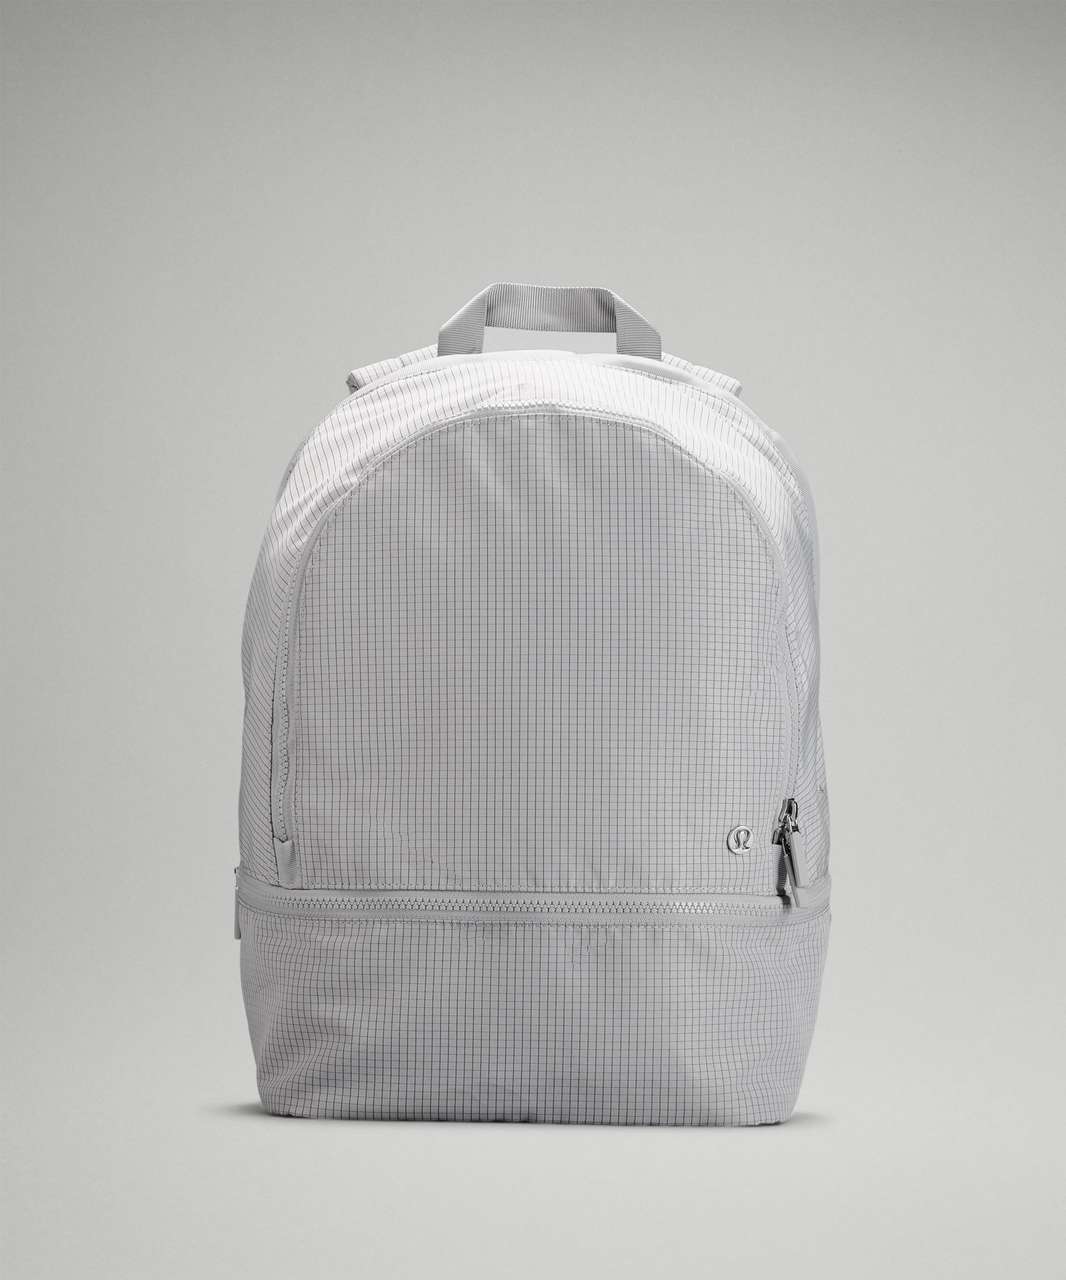 Lululemon City Adventurer Backpack 20L - Seal Grey / Graphite Grey